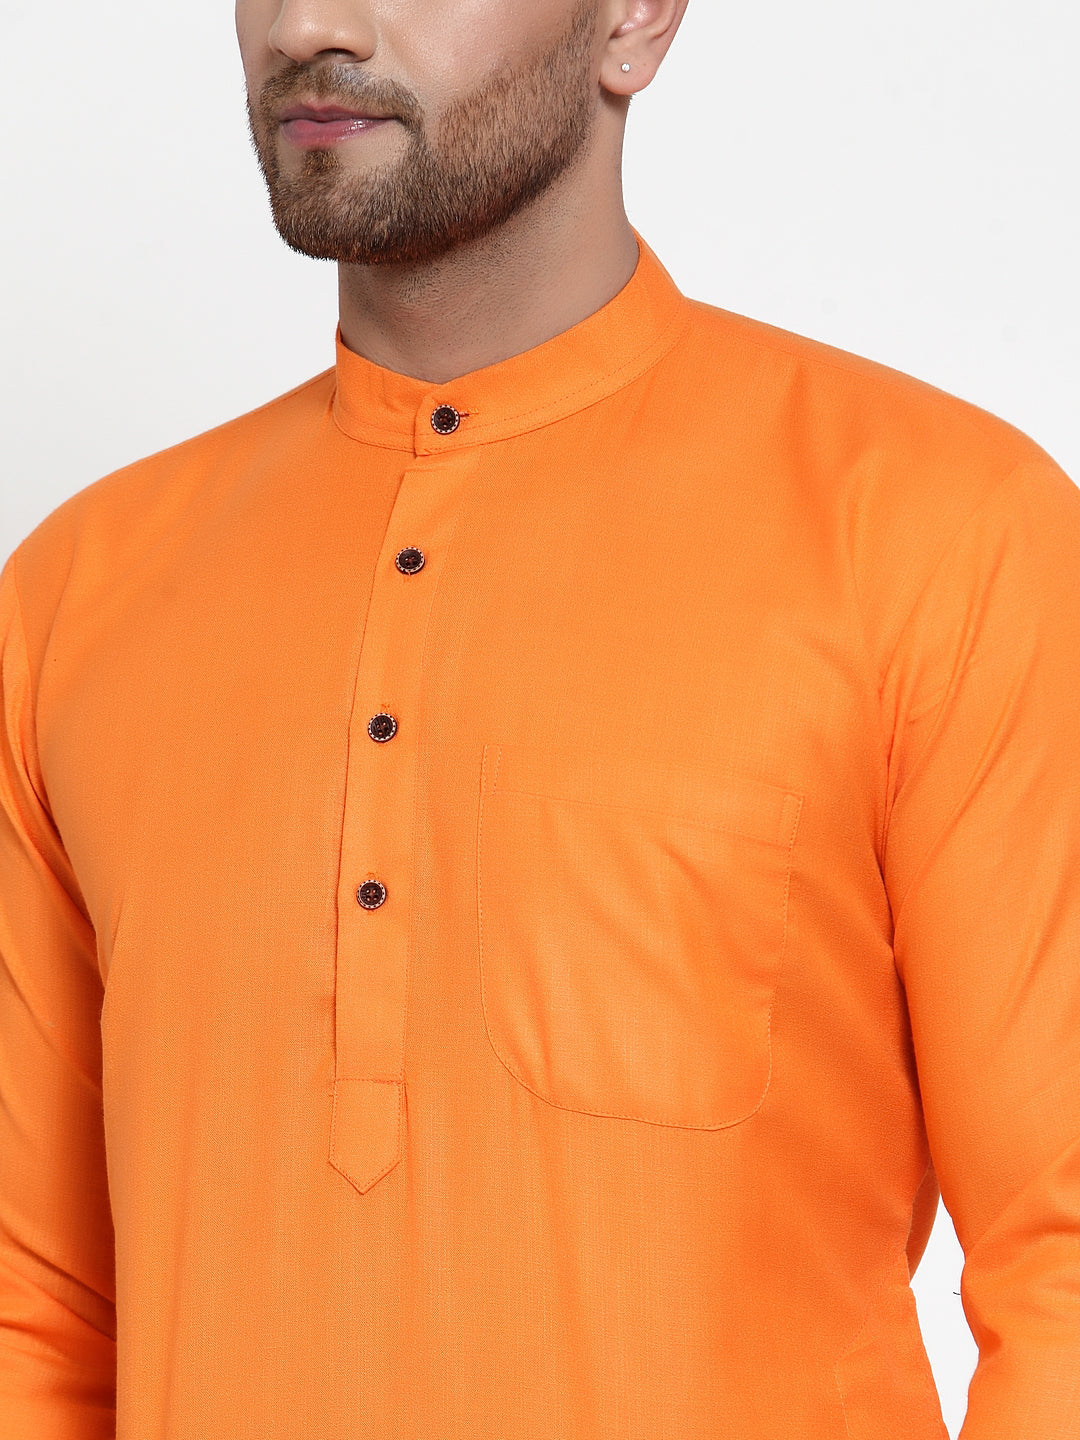 Men's Orange & White Solid Kurta Only ( KO 532 Orange ) - Virat Fashions